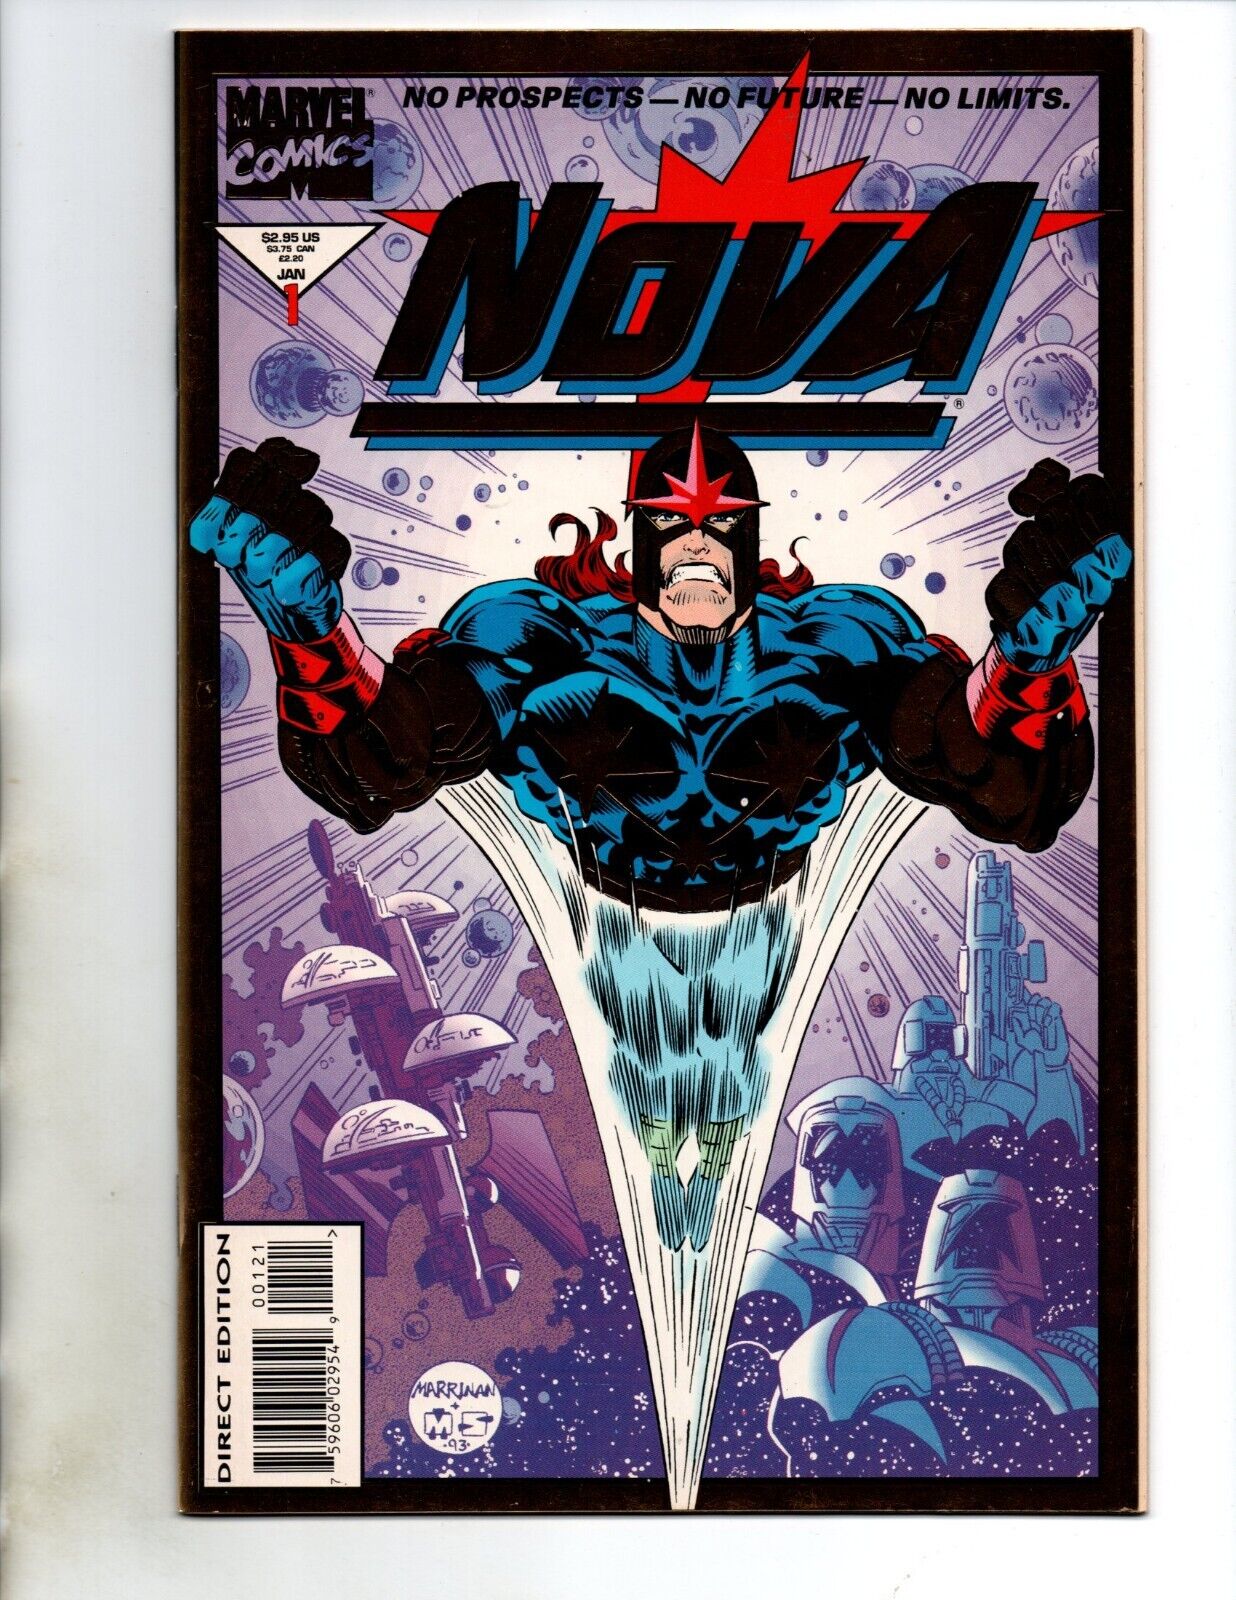 Nova Vol. 2 # 1 - 9 Marvel Comics Nicieza Marrinan 1994 NM-